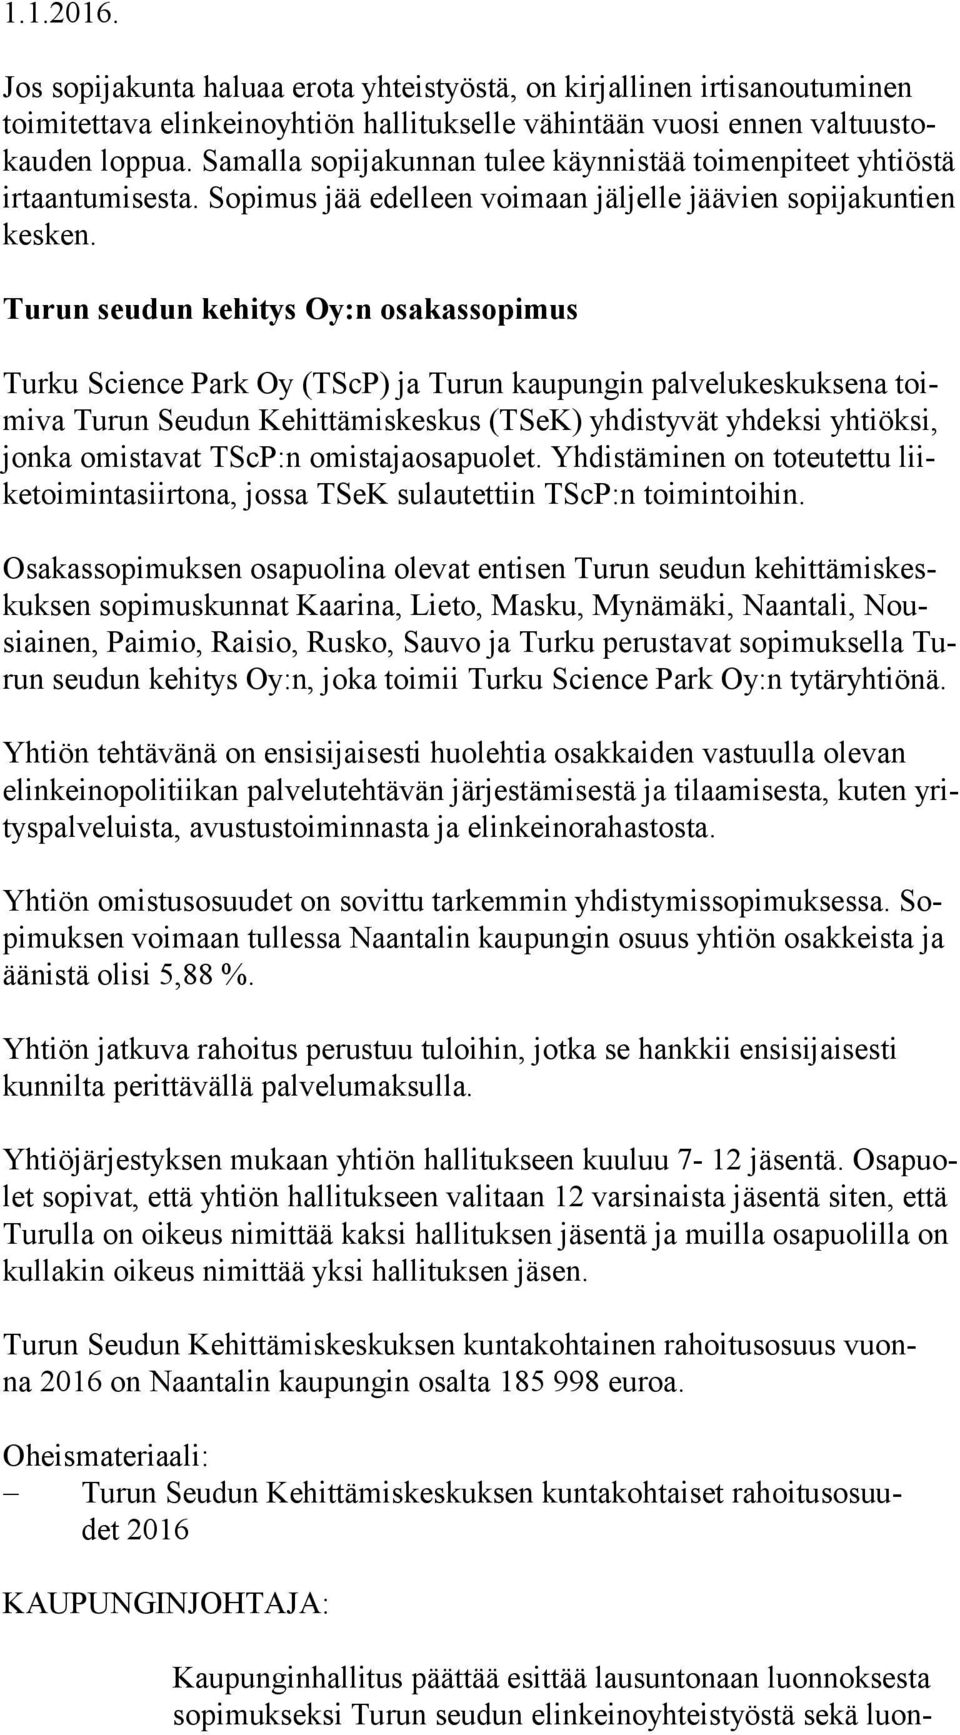 Turun seudun kehitys Oy:n osakassopimus Turku Science Park Oy (TScP) ja Turun kaupungin palvelukeskuksena toimi va Turun Seudun Kehittämiskeskus (TSeK) yhdistyvät yhdeksi yhtiöksi, jon ka omistavat